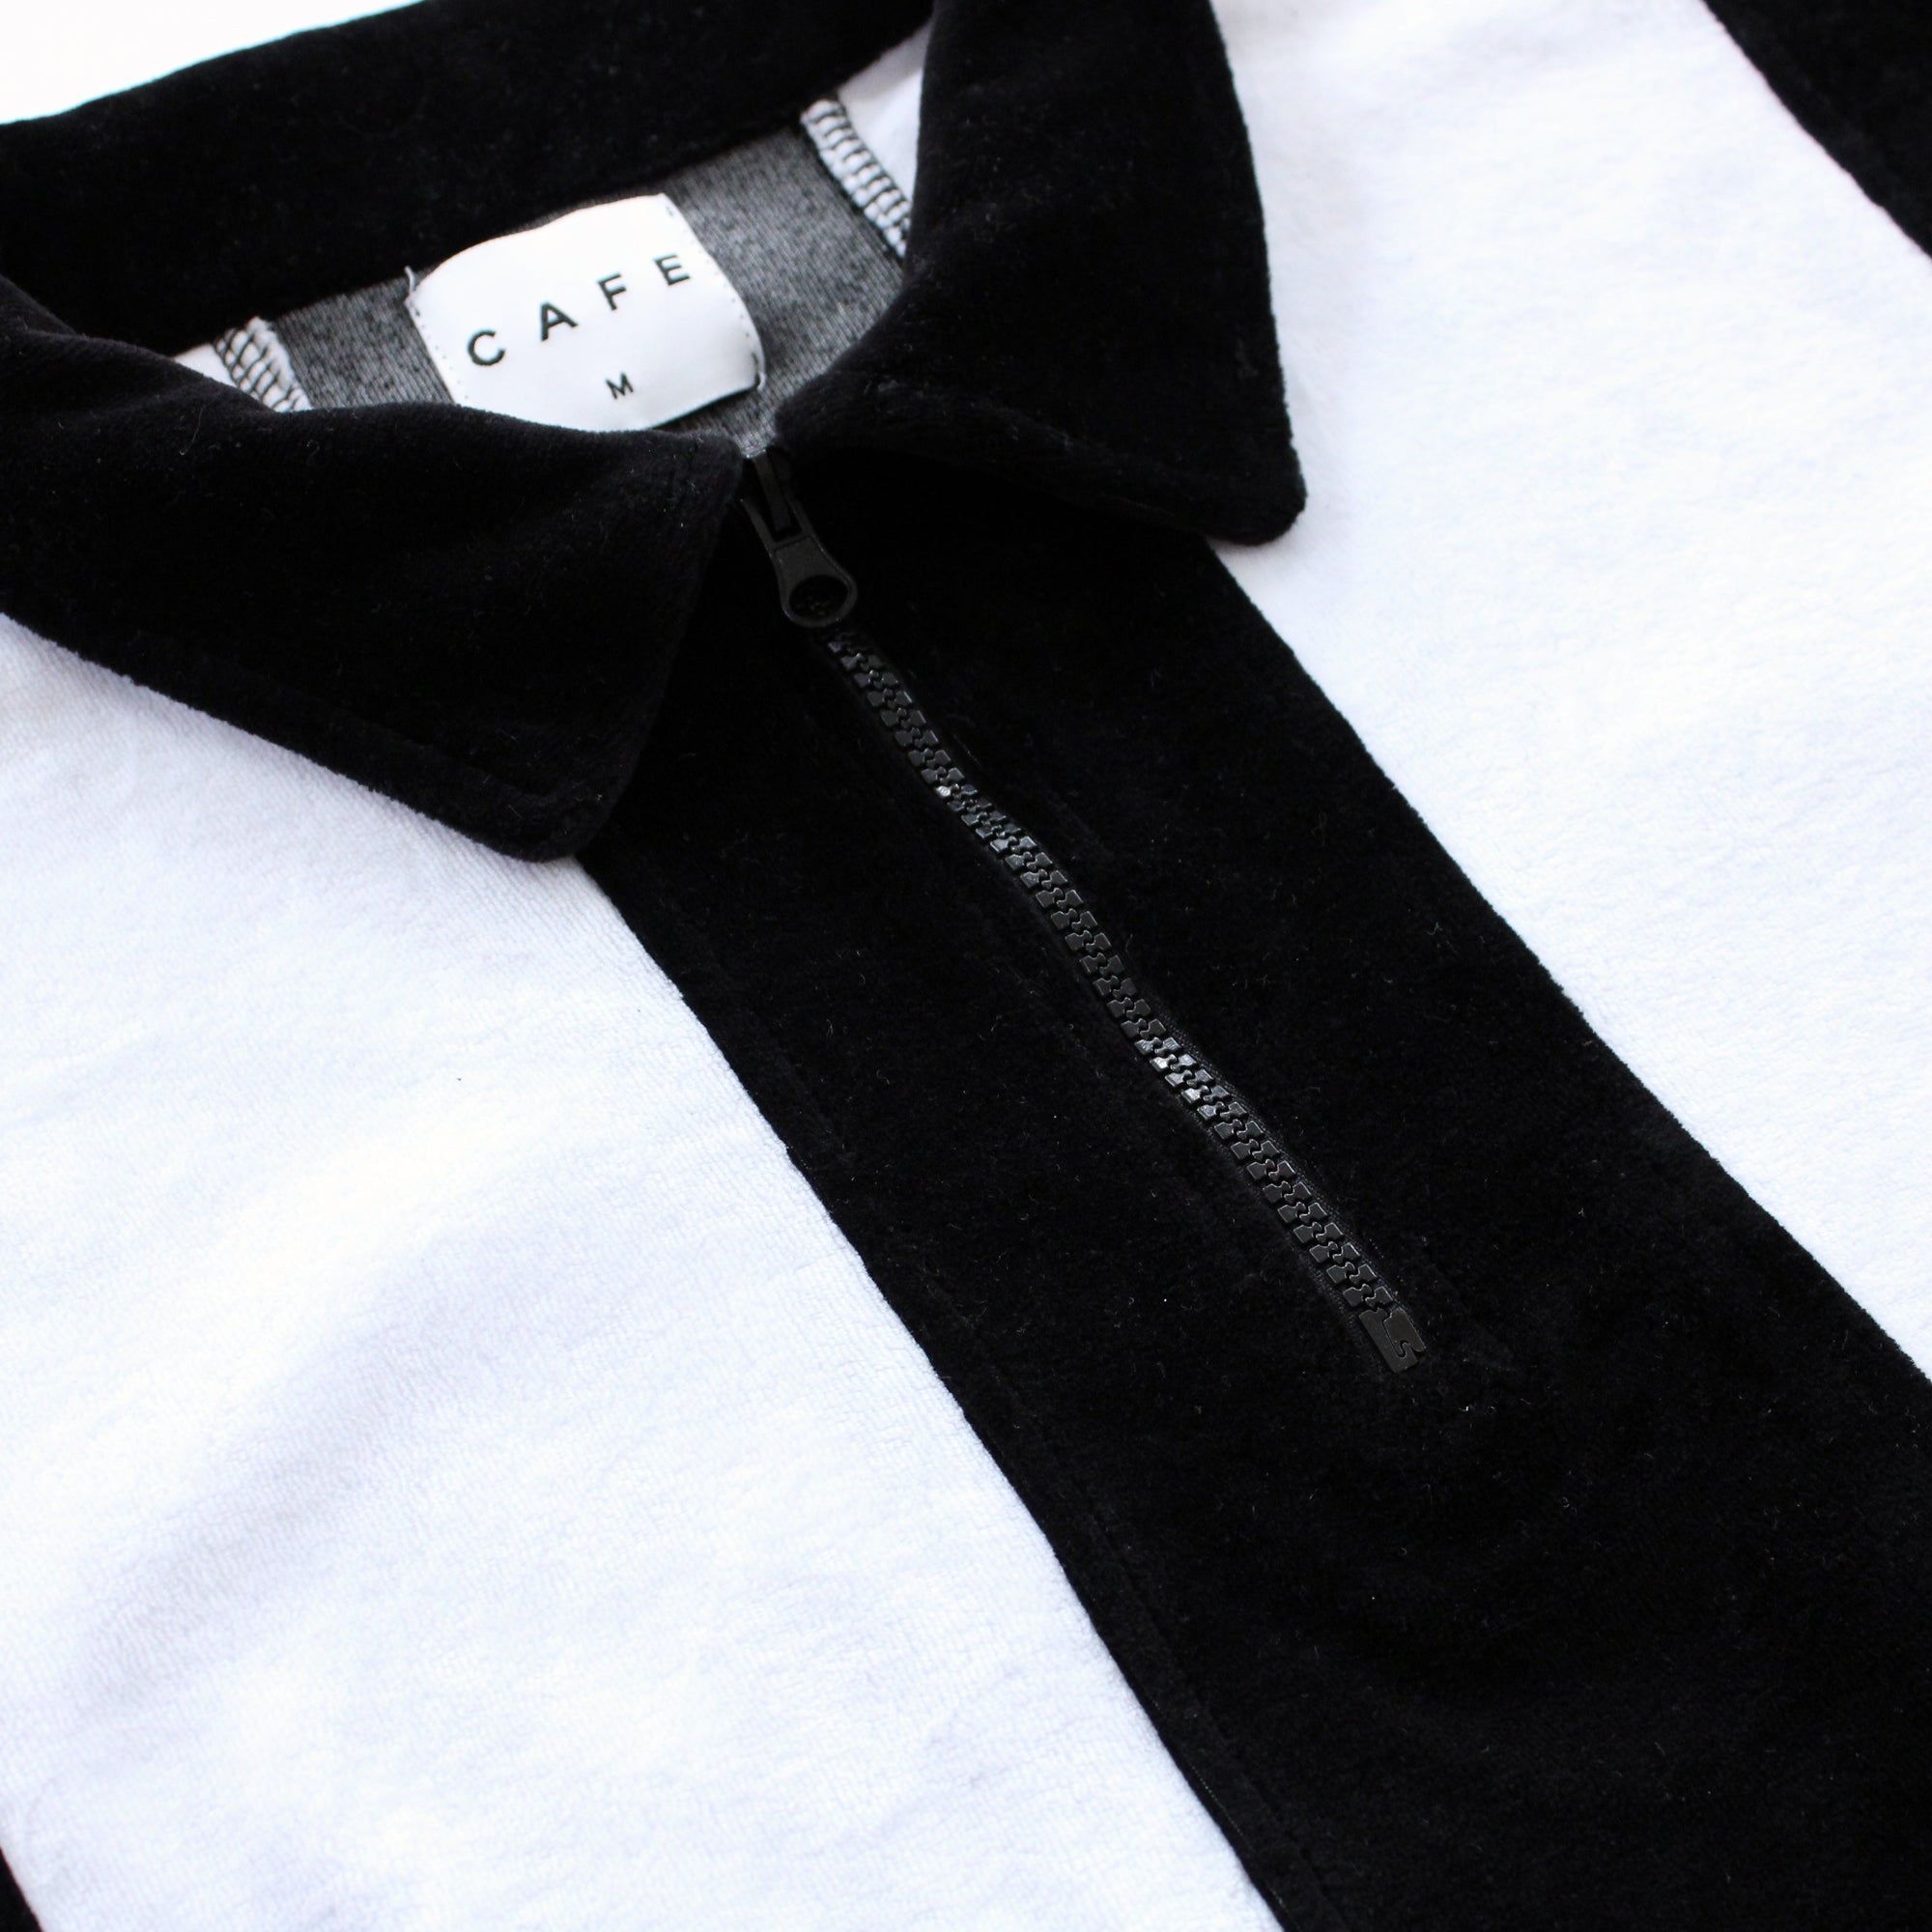 Stripe 1/4 Zip Velour Polo Shirt (Black/White)